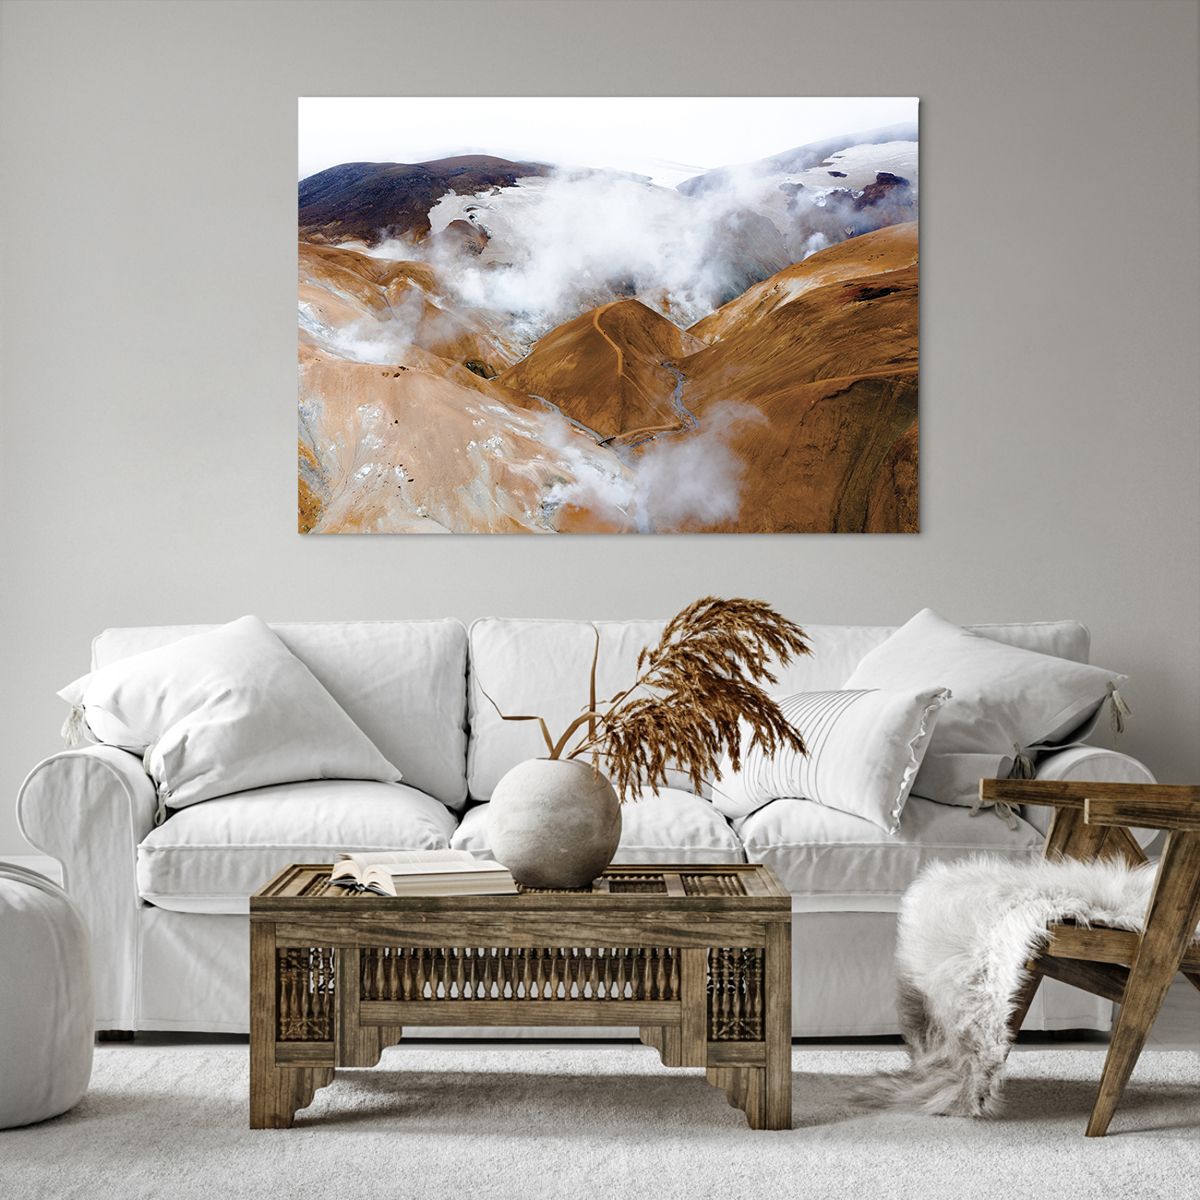 Bild auf Leinwand Landschaft, Bild auf Leinwand Wasserfall, Bild auf Leinwand Island, Bild auf Leinwand Vulkan, Bild auf Leinwand Natur